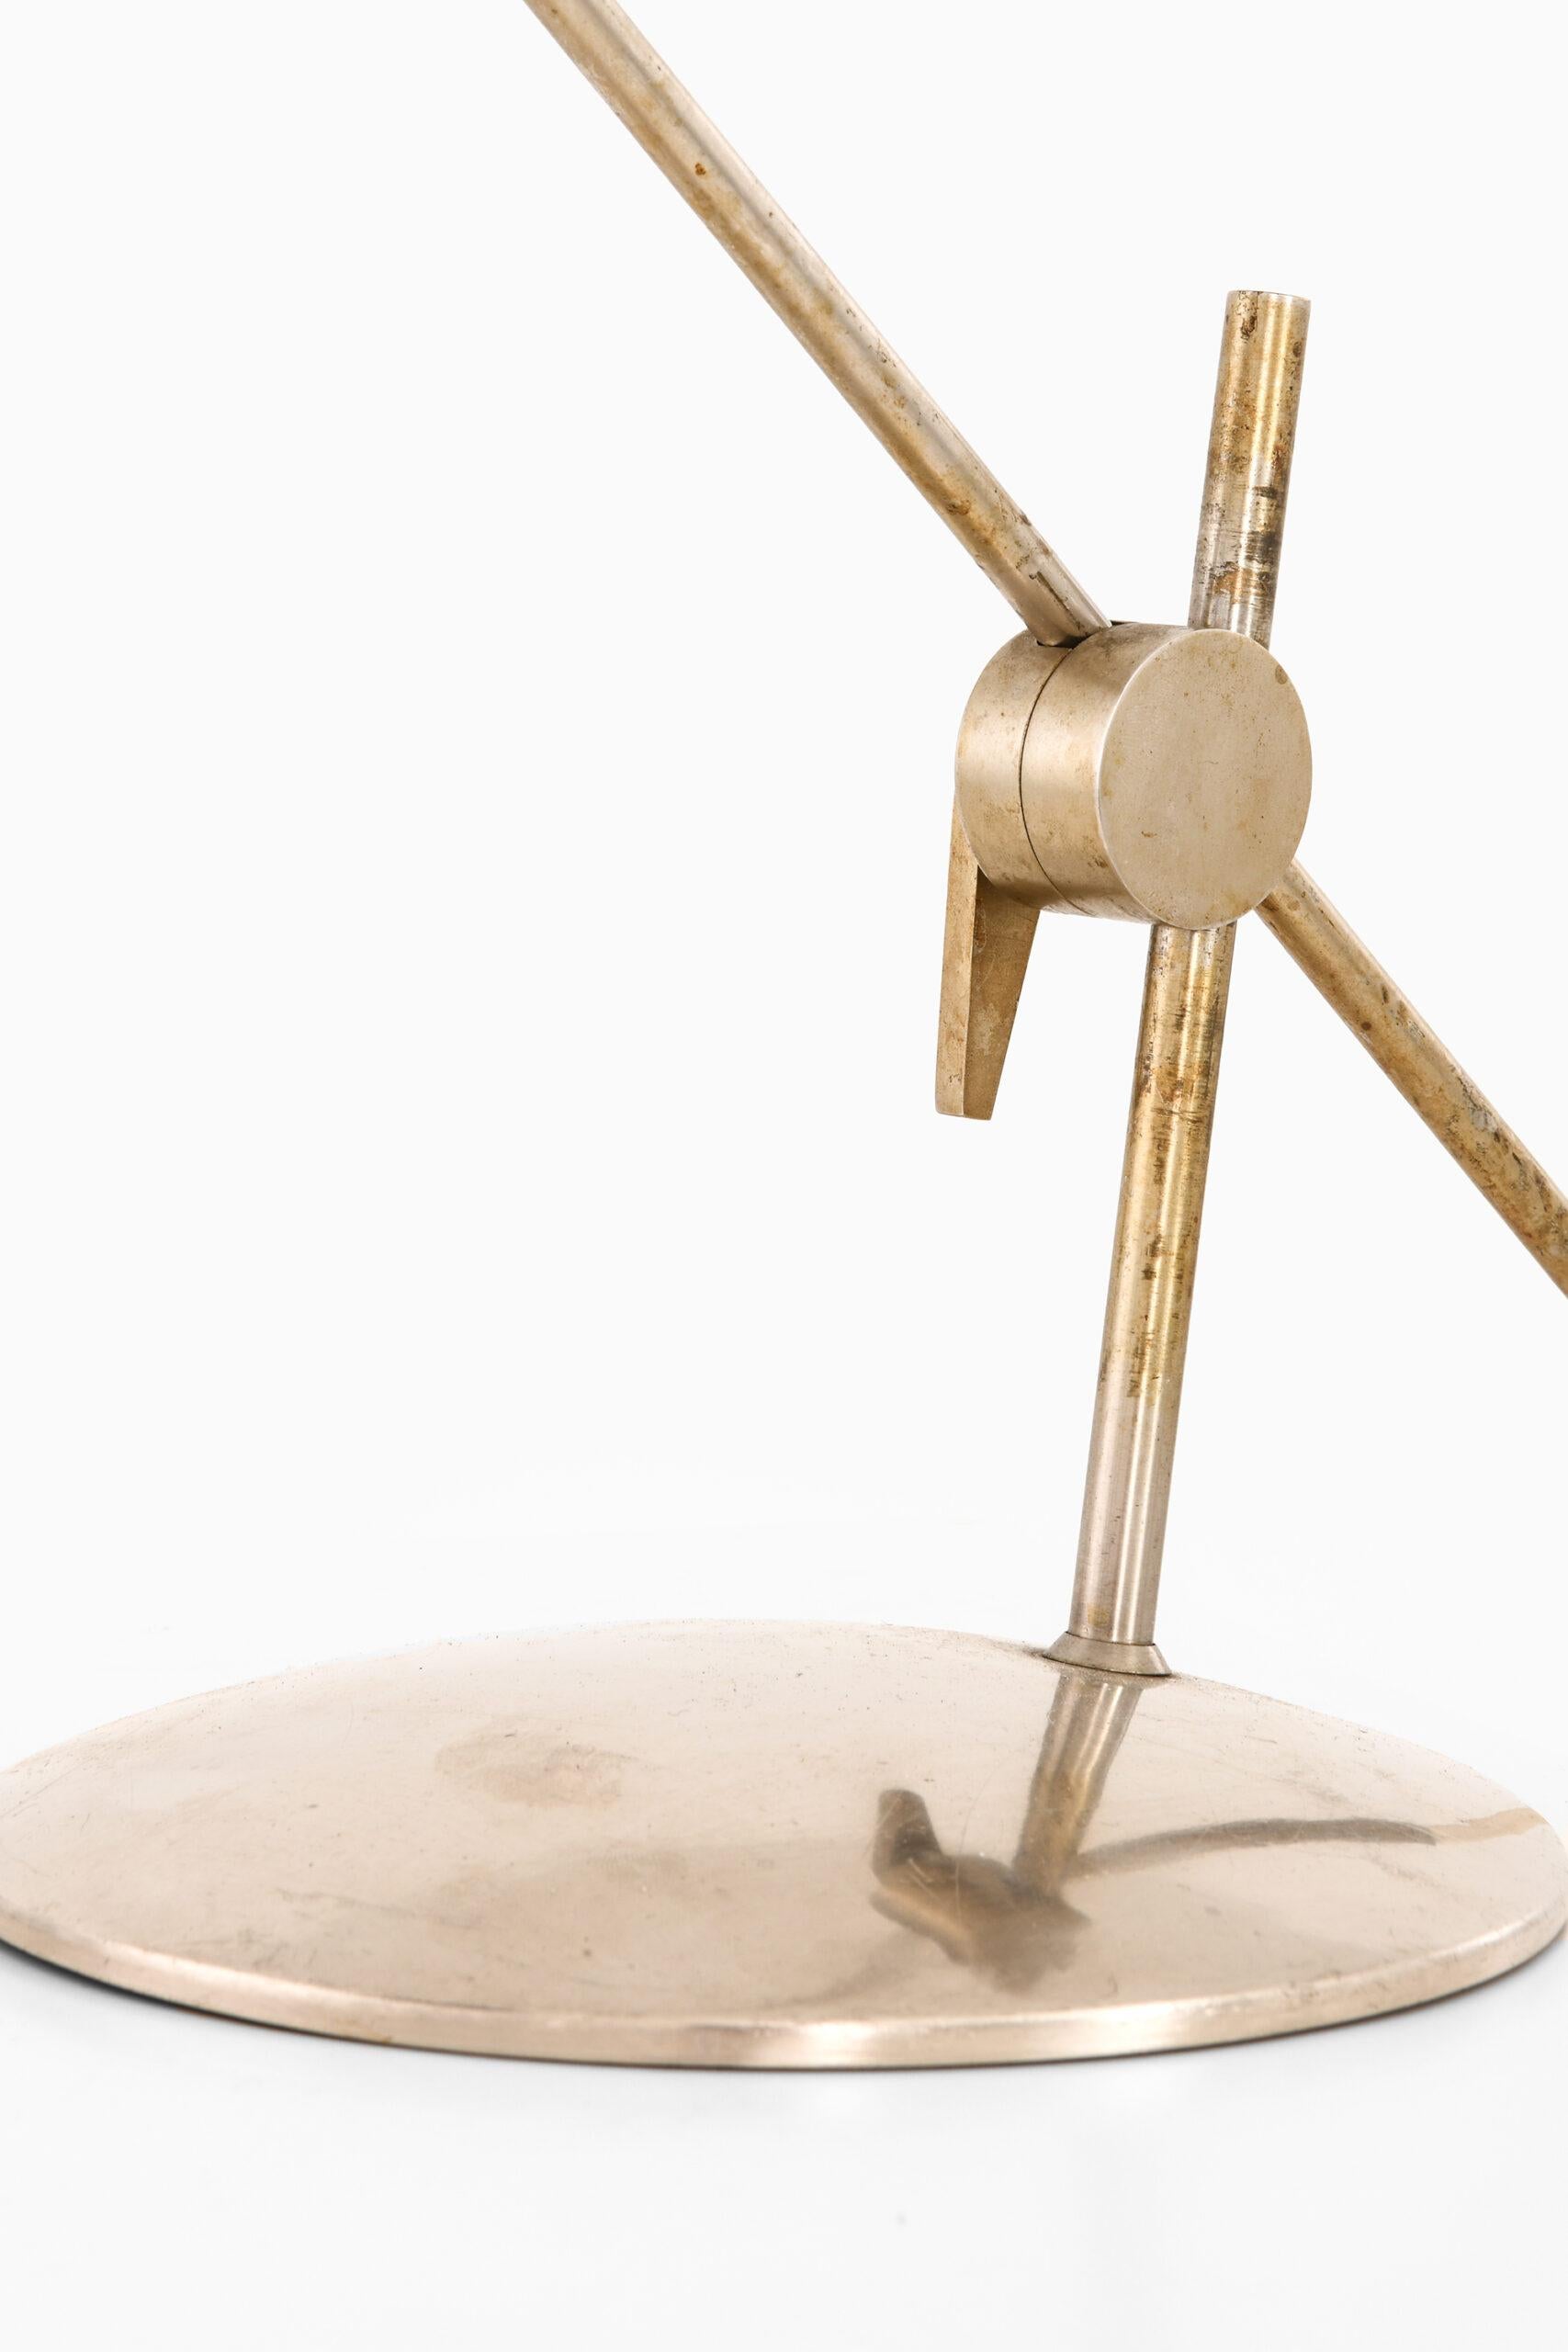 Sehr seltene Tischlampe, entworfen von Poul Dinesen. Produziert von Poul Dinesen in Dänemark.